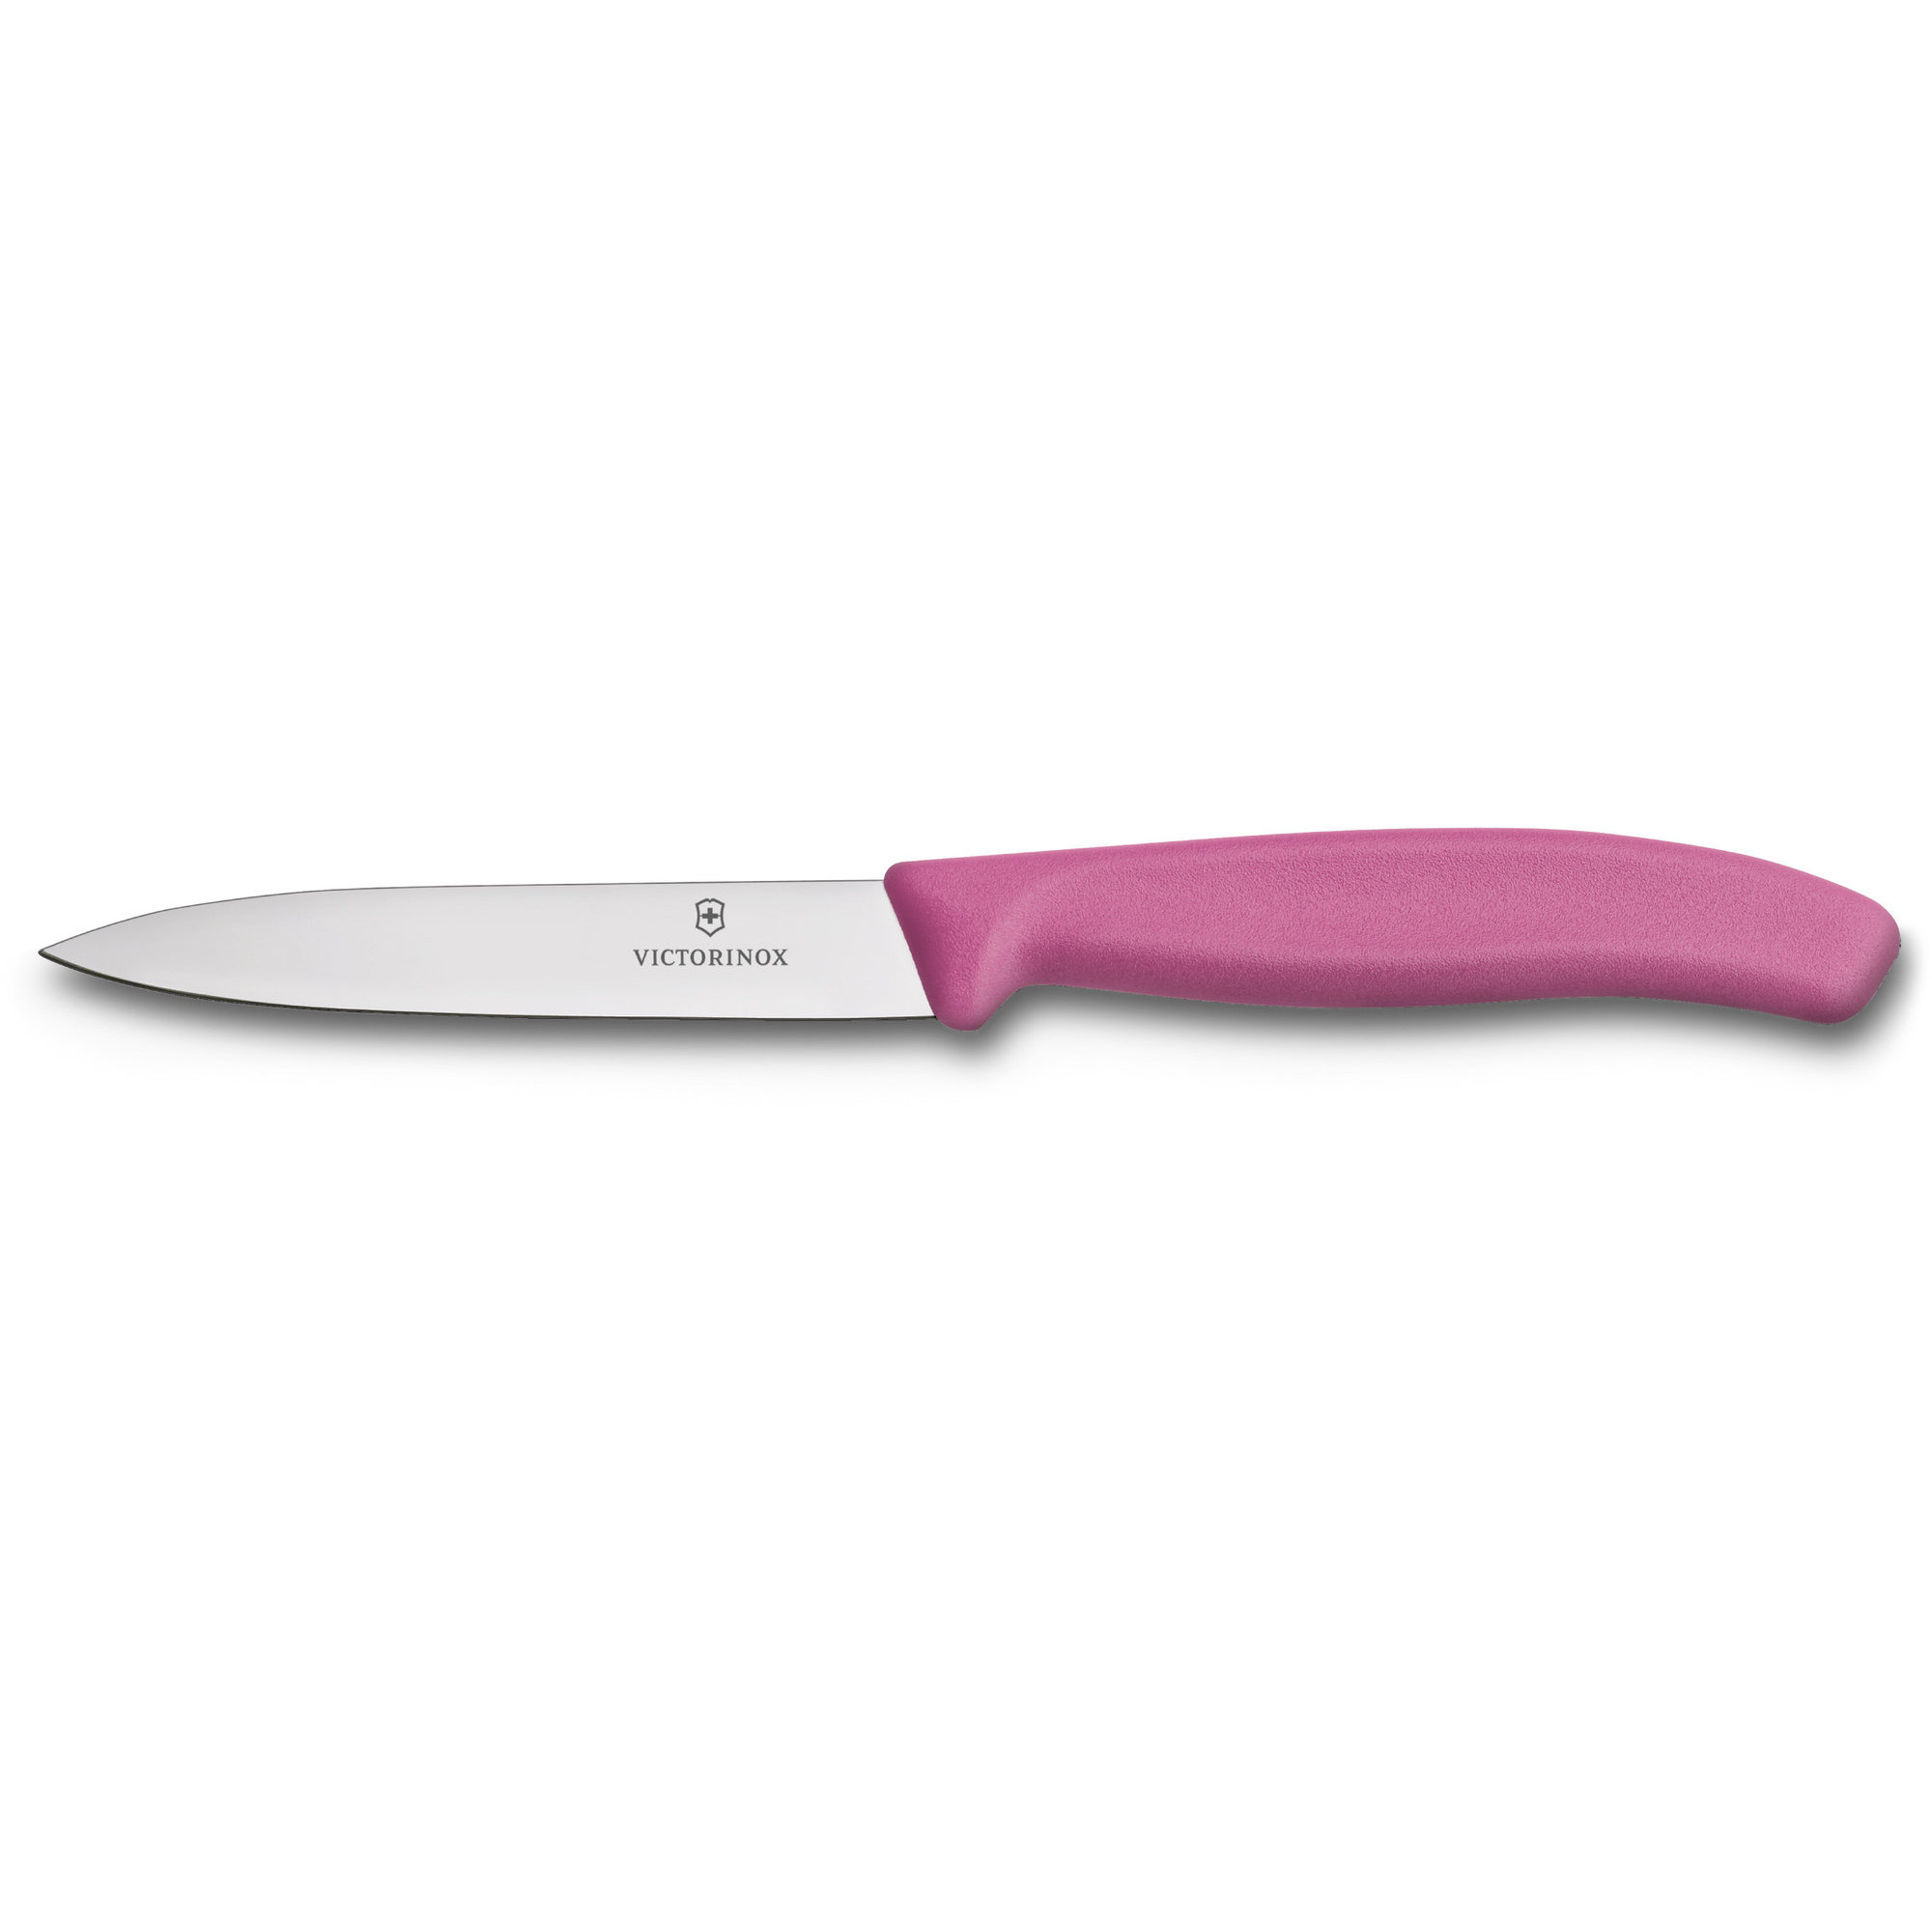 Victorinox Grøntsags- og skrællekniv med nylonhåndtag i lyserød, 10 cm.